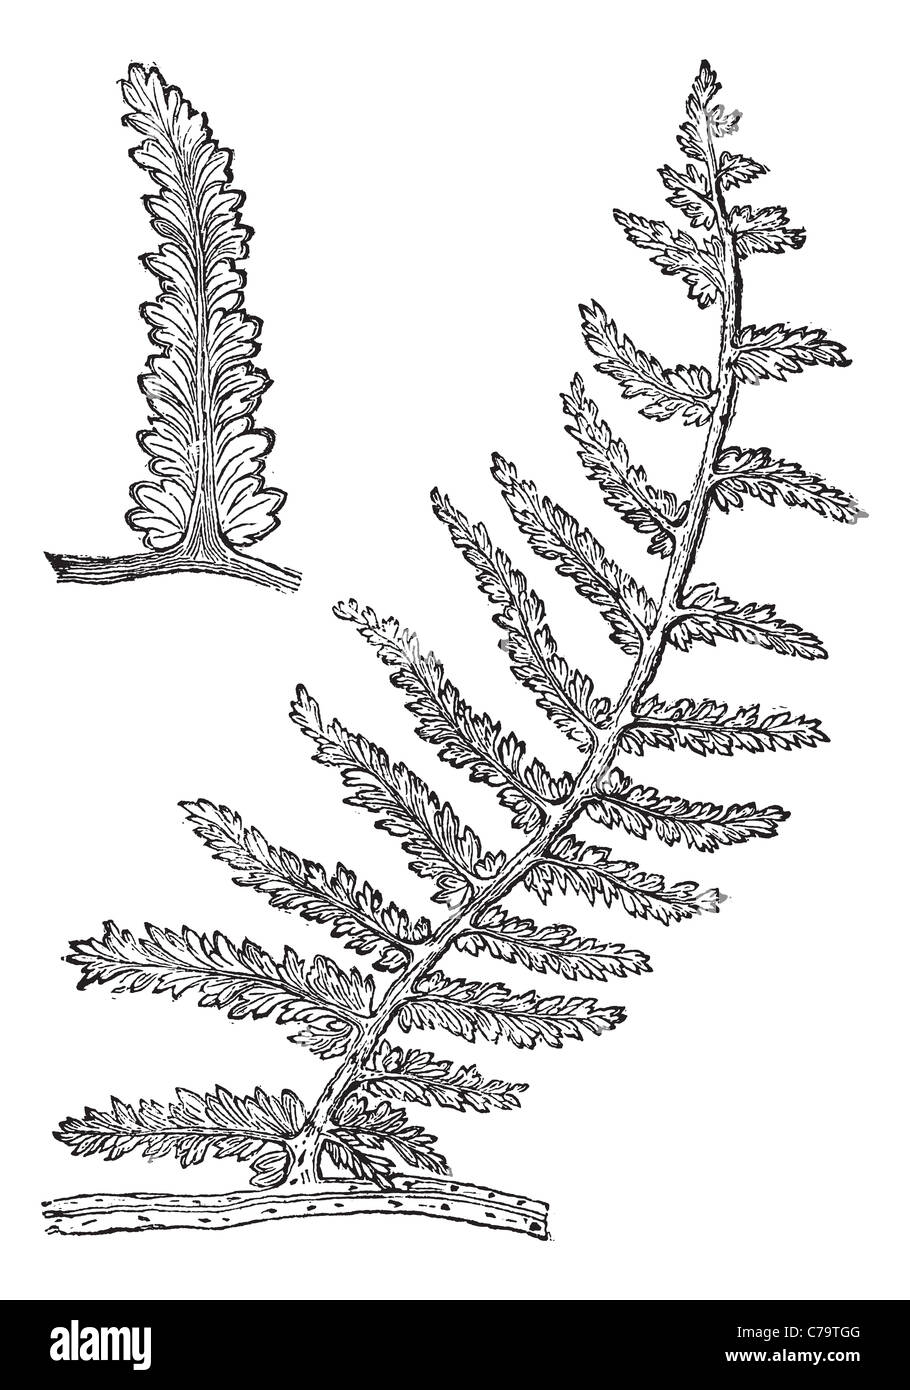 Sphenopteris, Vintage Gravur. Alten graviert Abbildung von Sphenopteris, einem erloschenen Samen Farn. Stockfoto